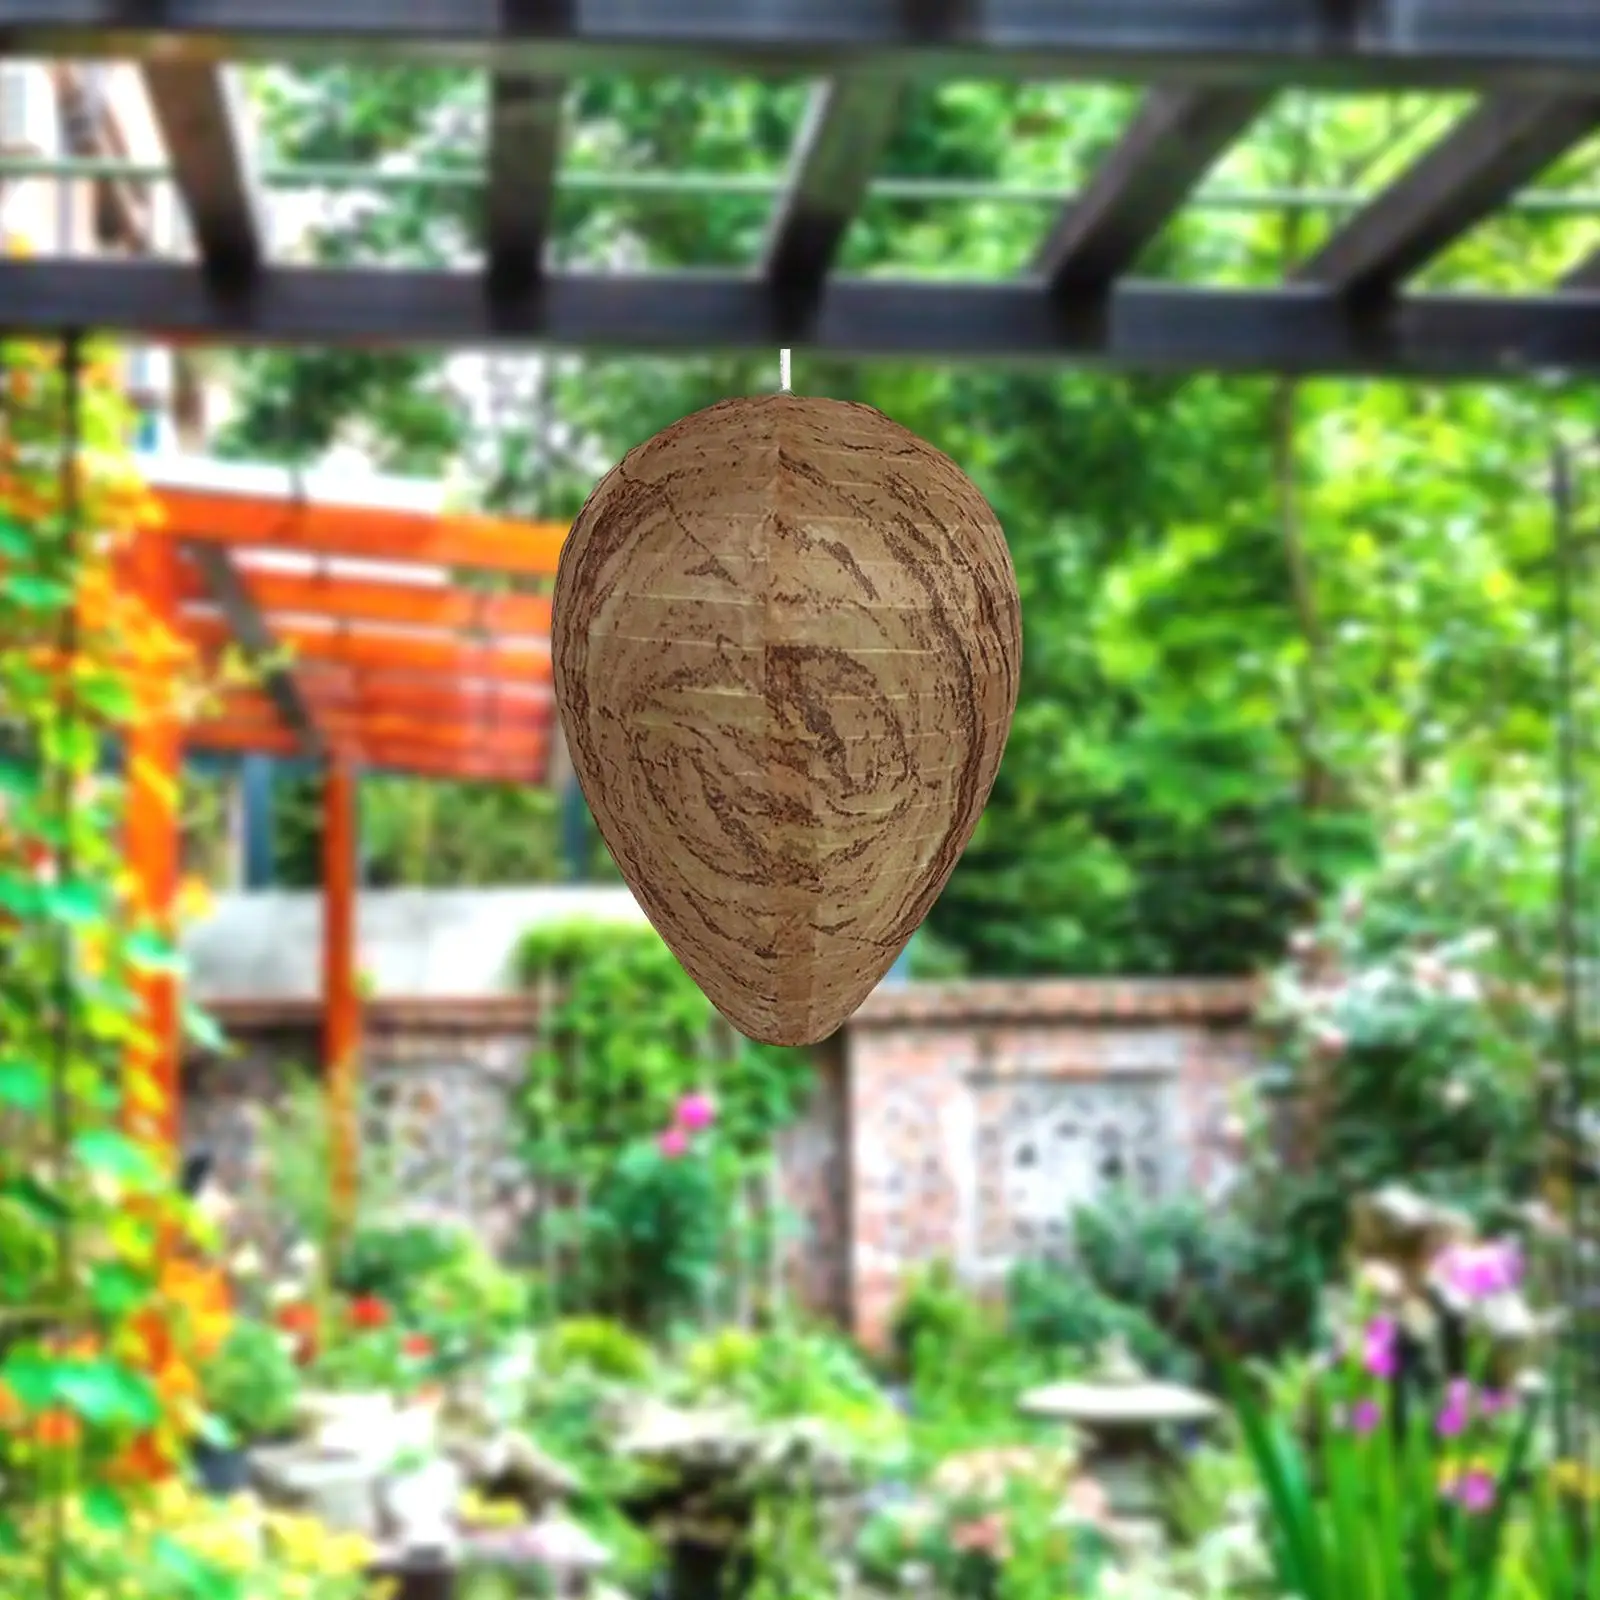 

2/3 3Pcs Waterproof Wasp Nest Decoy Bee Decoy Deterrent for Home Garden Outdoors Brown waterproof